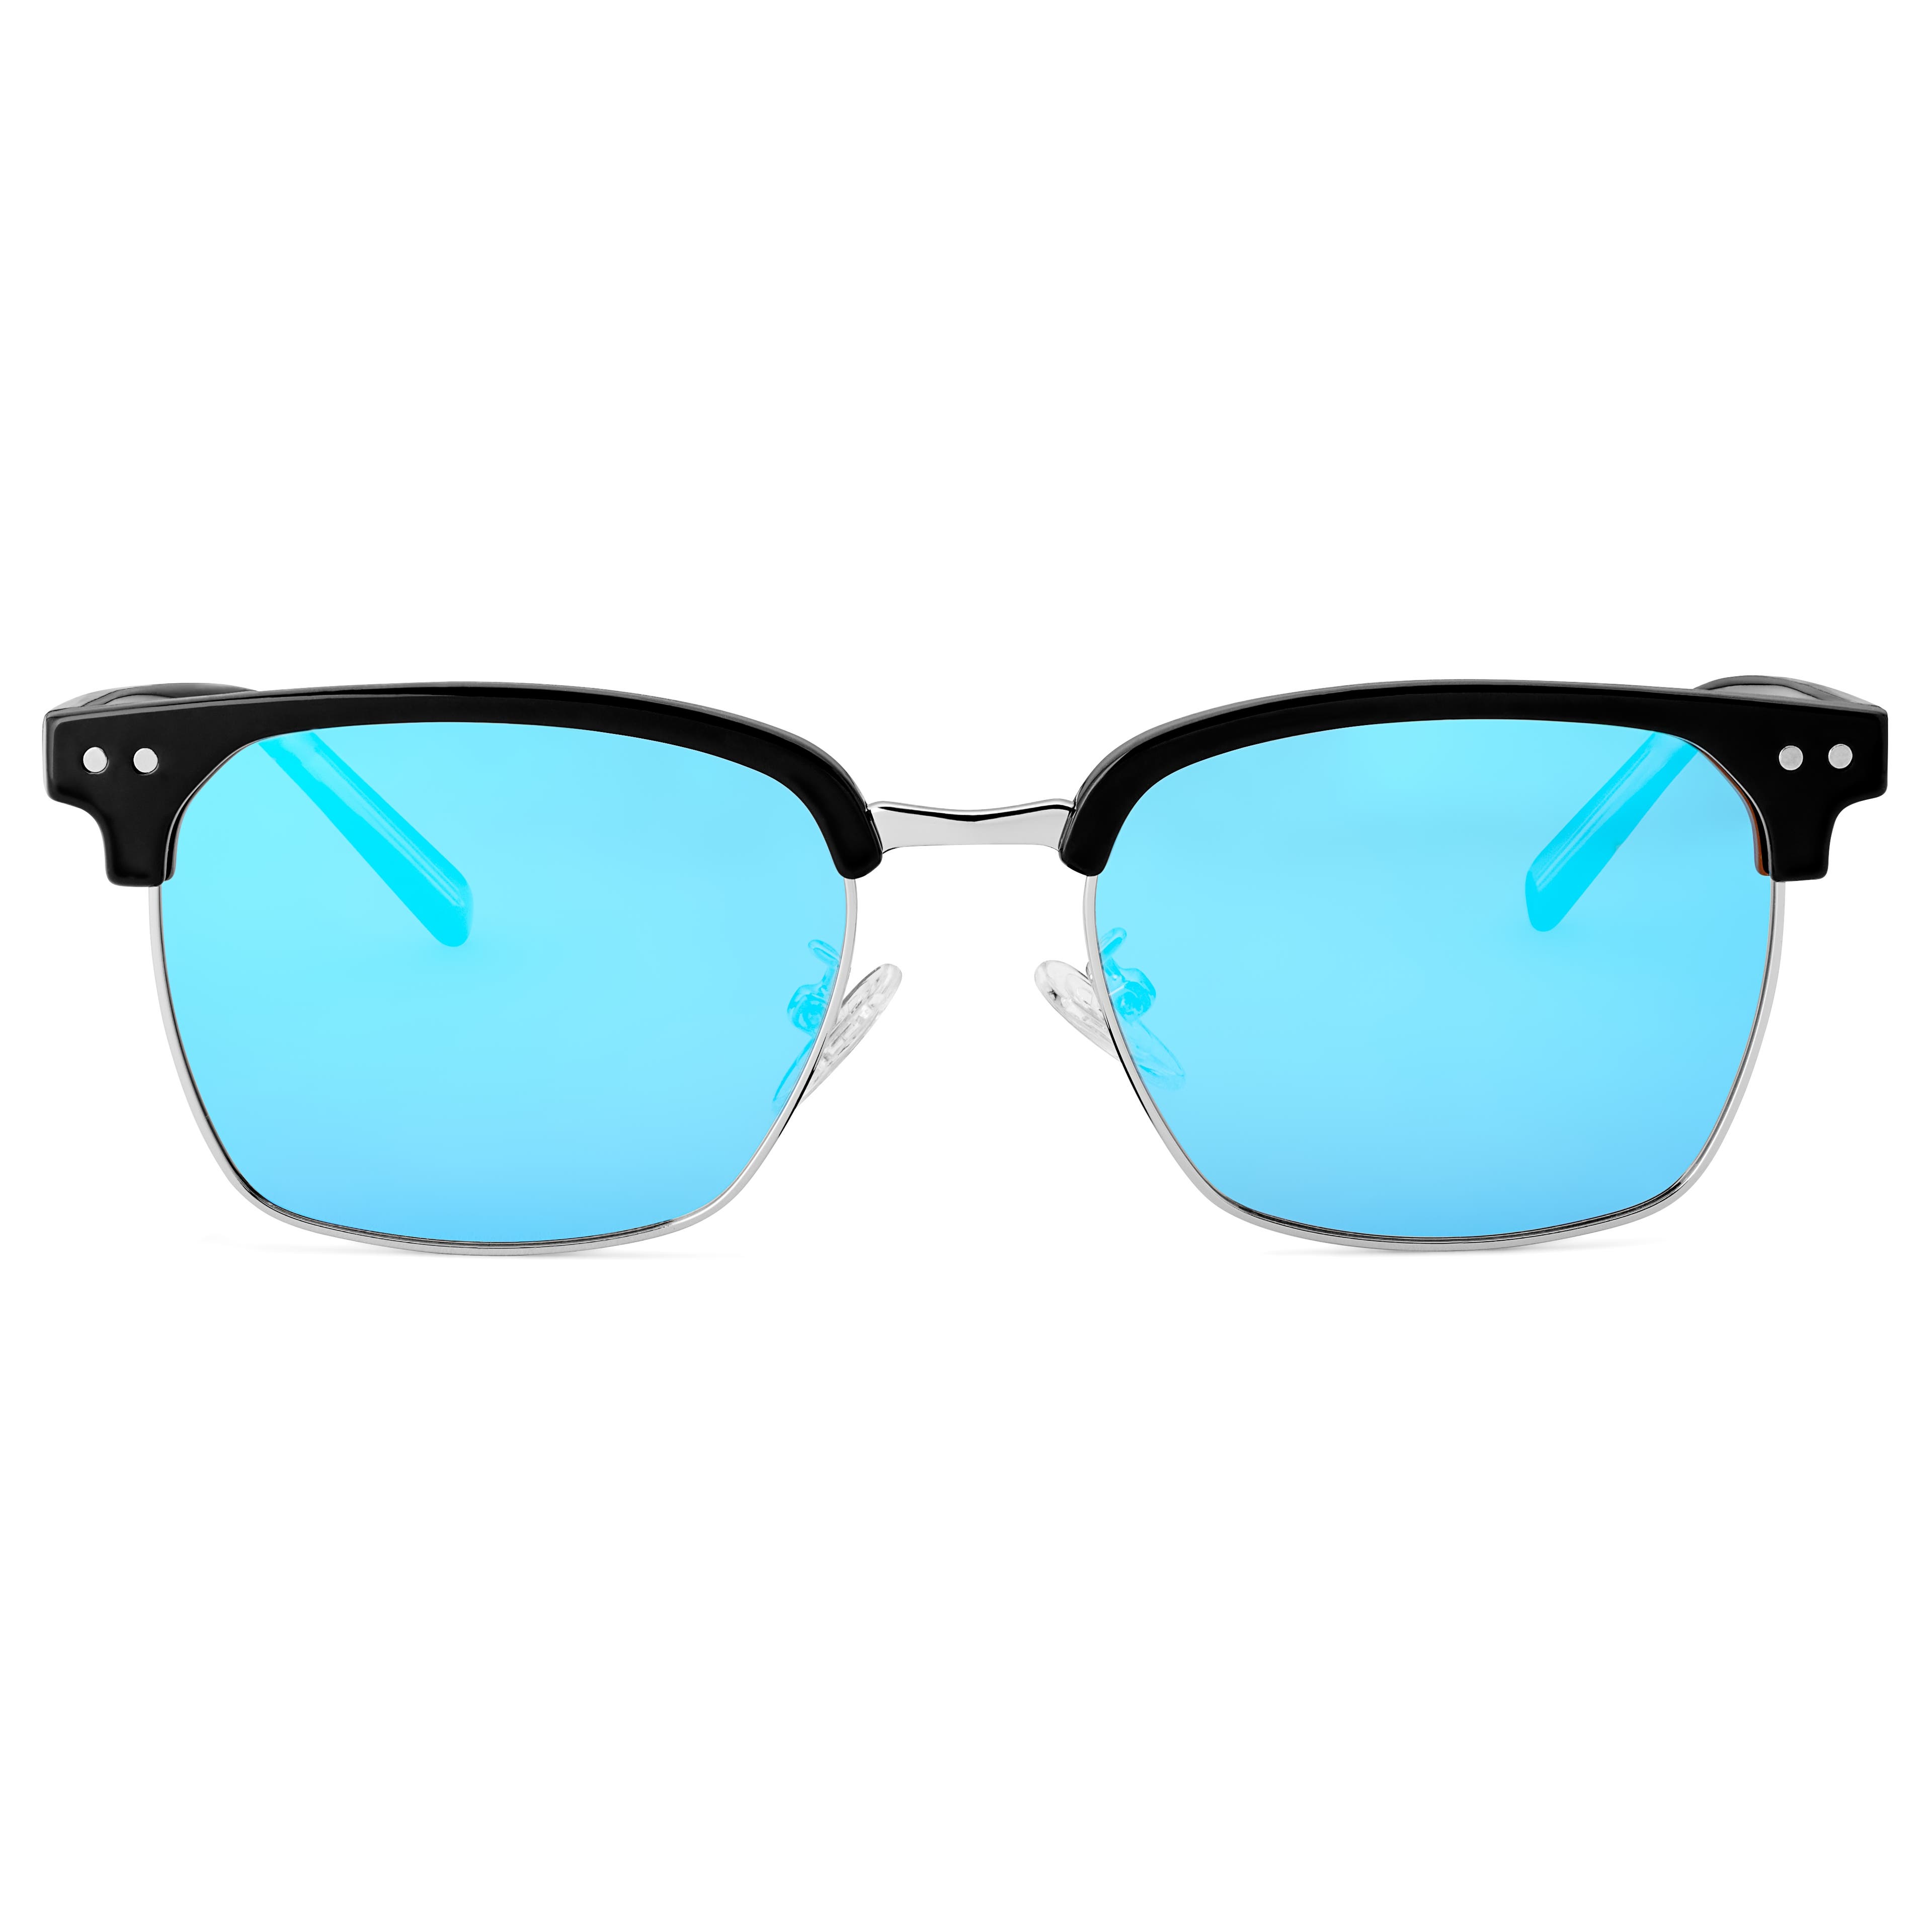 Černé a modré polarizační sluneční brýle Browline